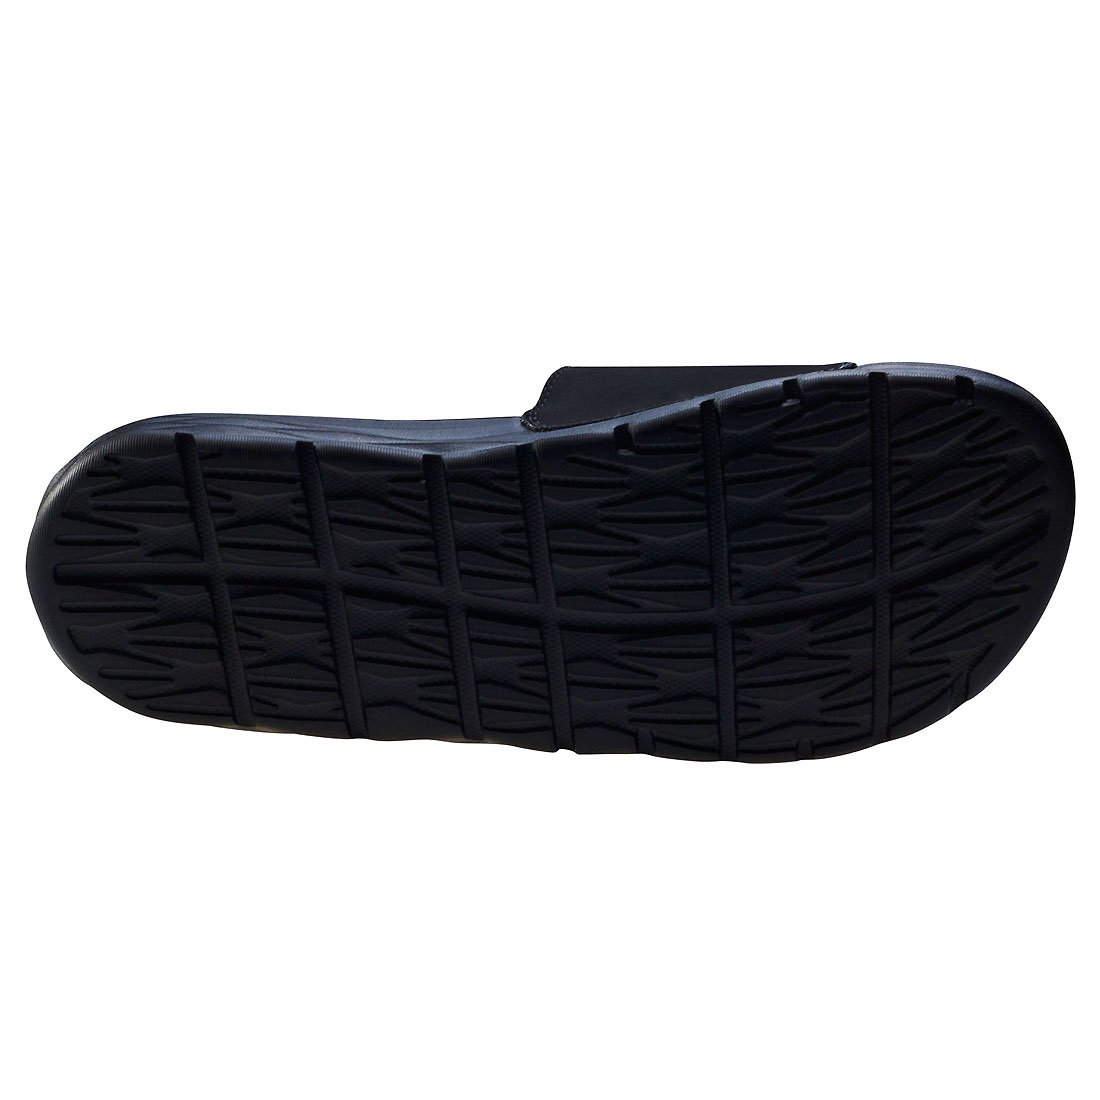 Nike Men's Benassi Solarsoft Slide Athletic Sandal